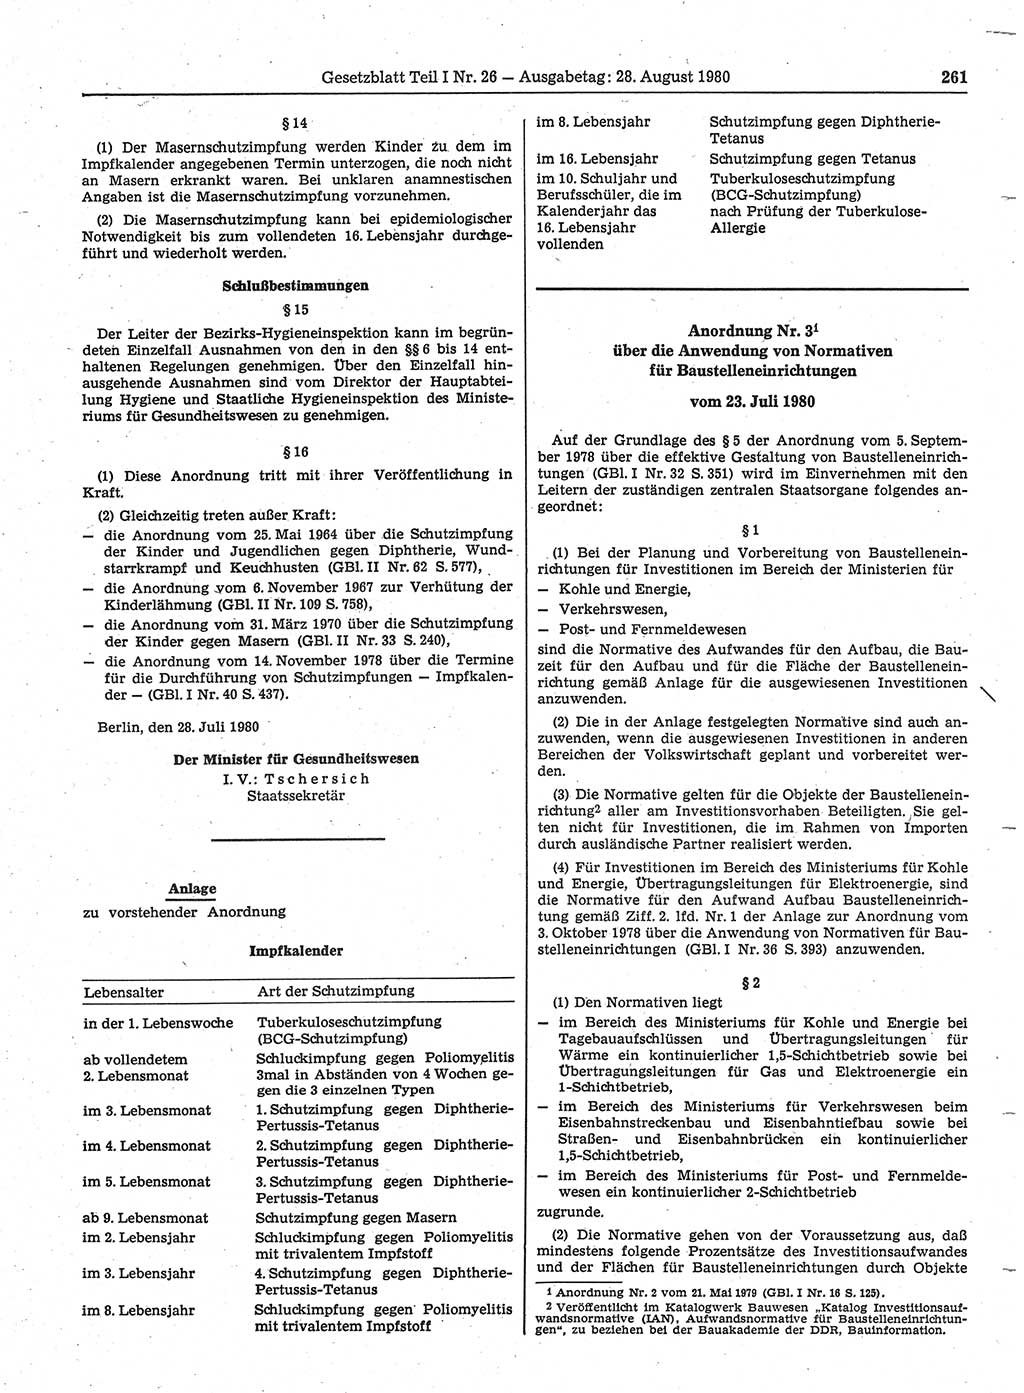 Gesetzblatt (GBl.) der Deutschen Demokratischen Republik (DDR) Teil Ⅰ 1980, Seite 261 (GBl. DDR Ⅰ 1980, S. 261)